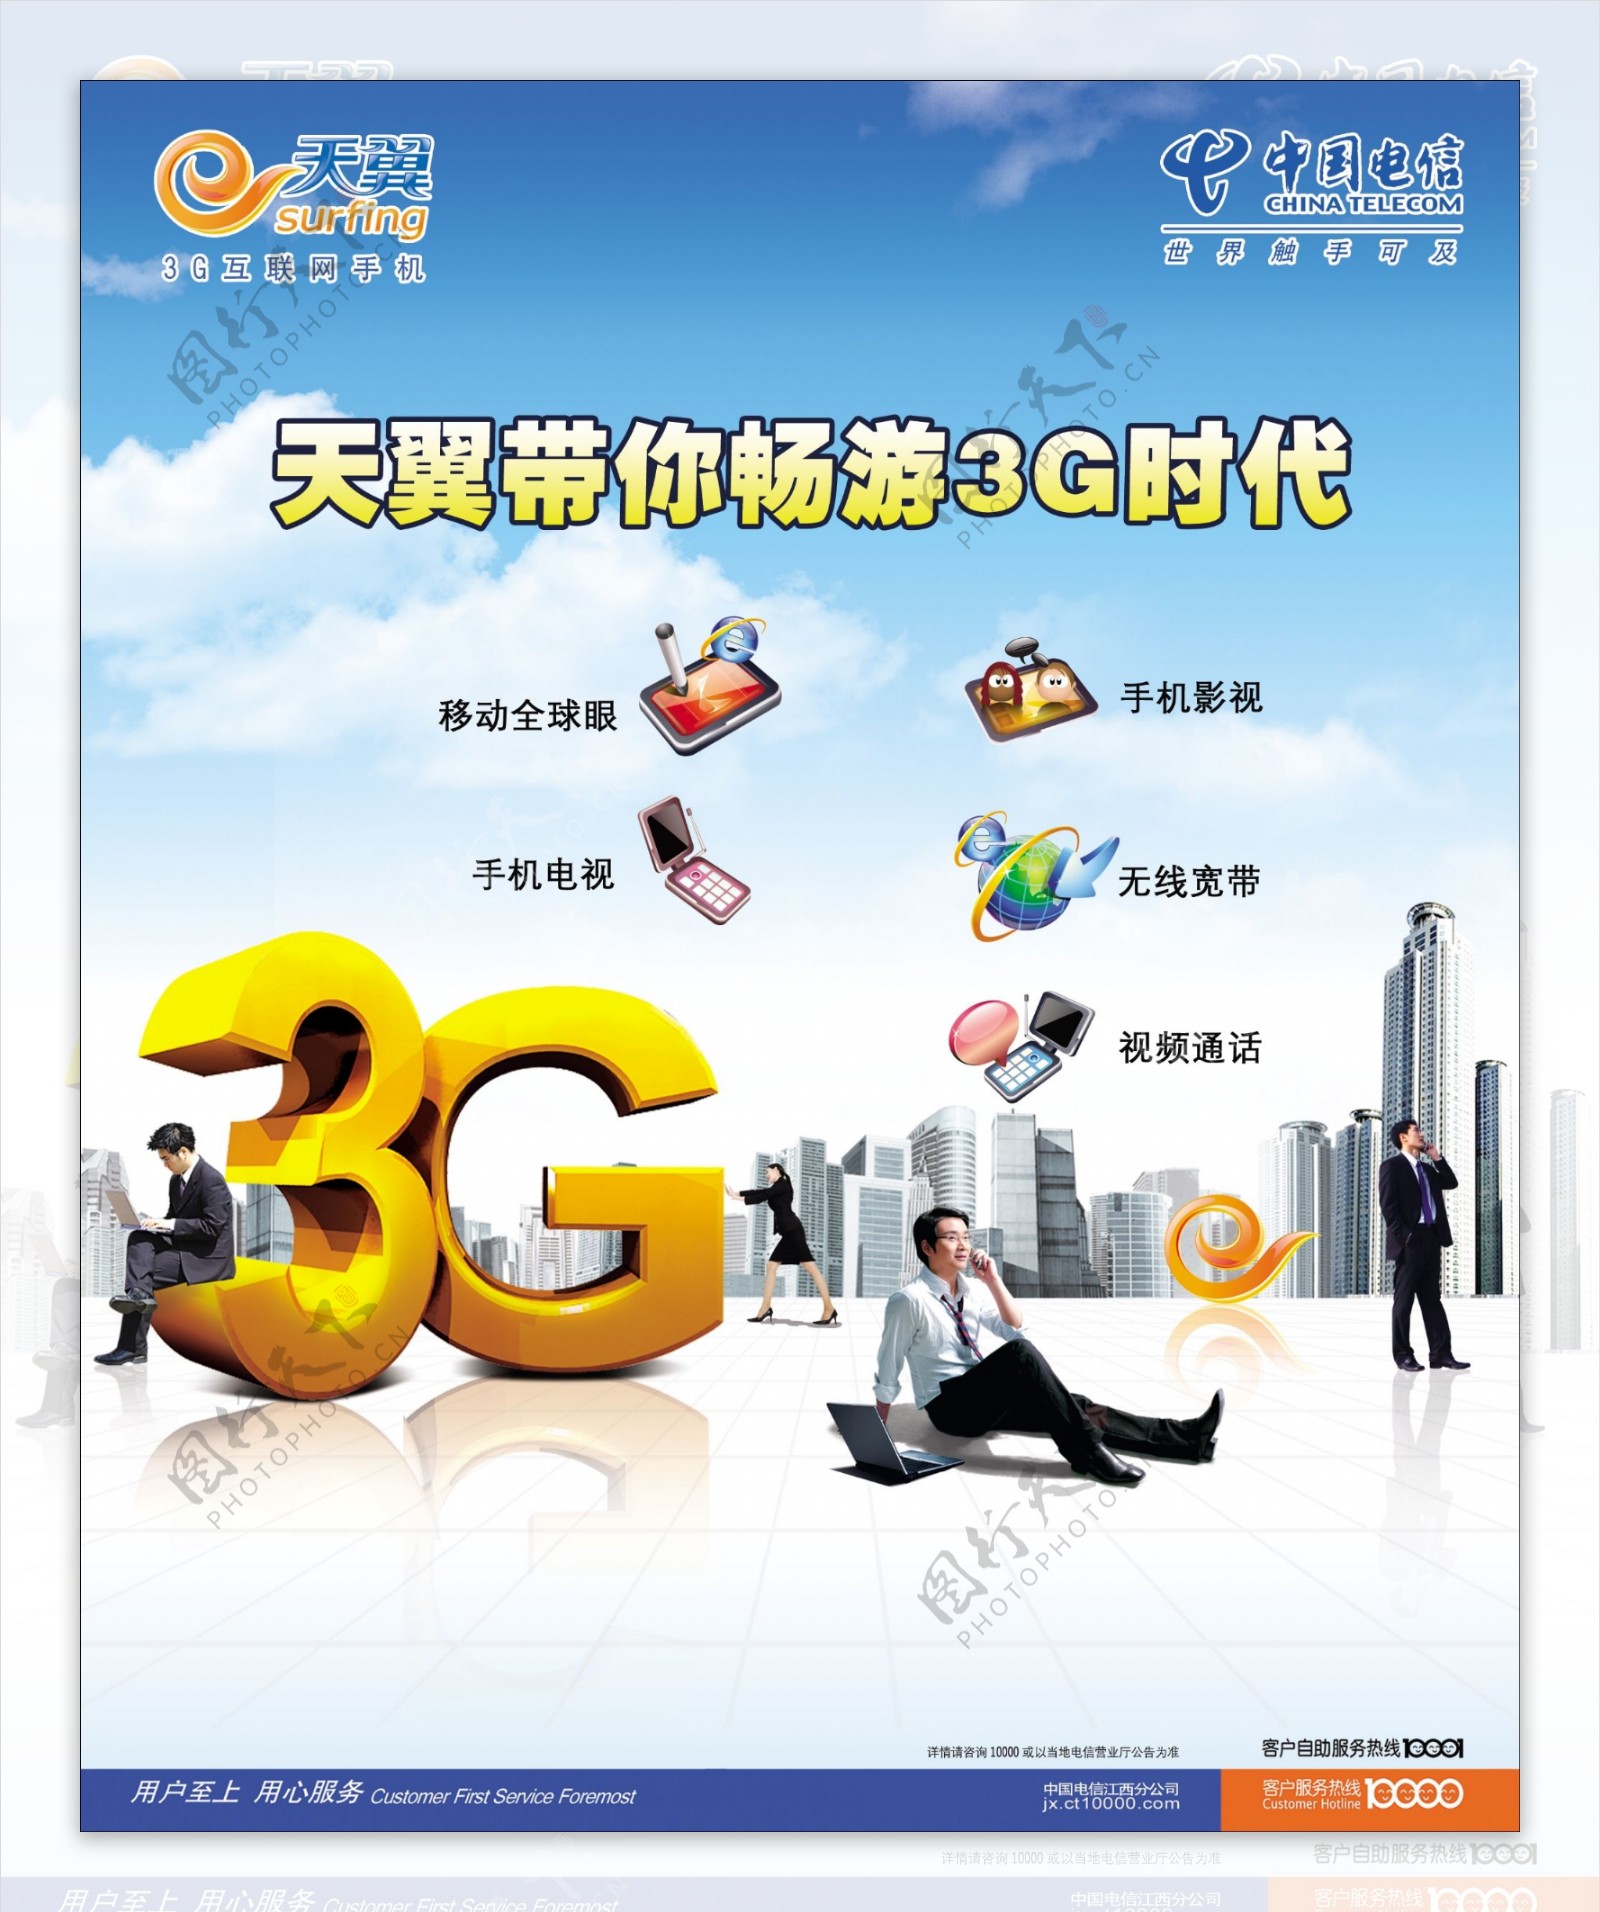 中国电信3G体验区板